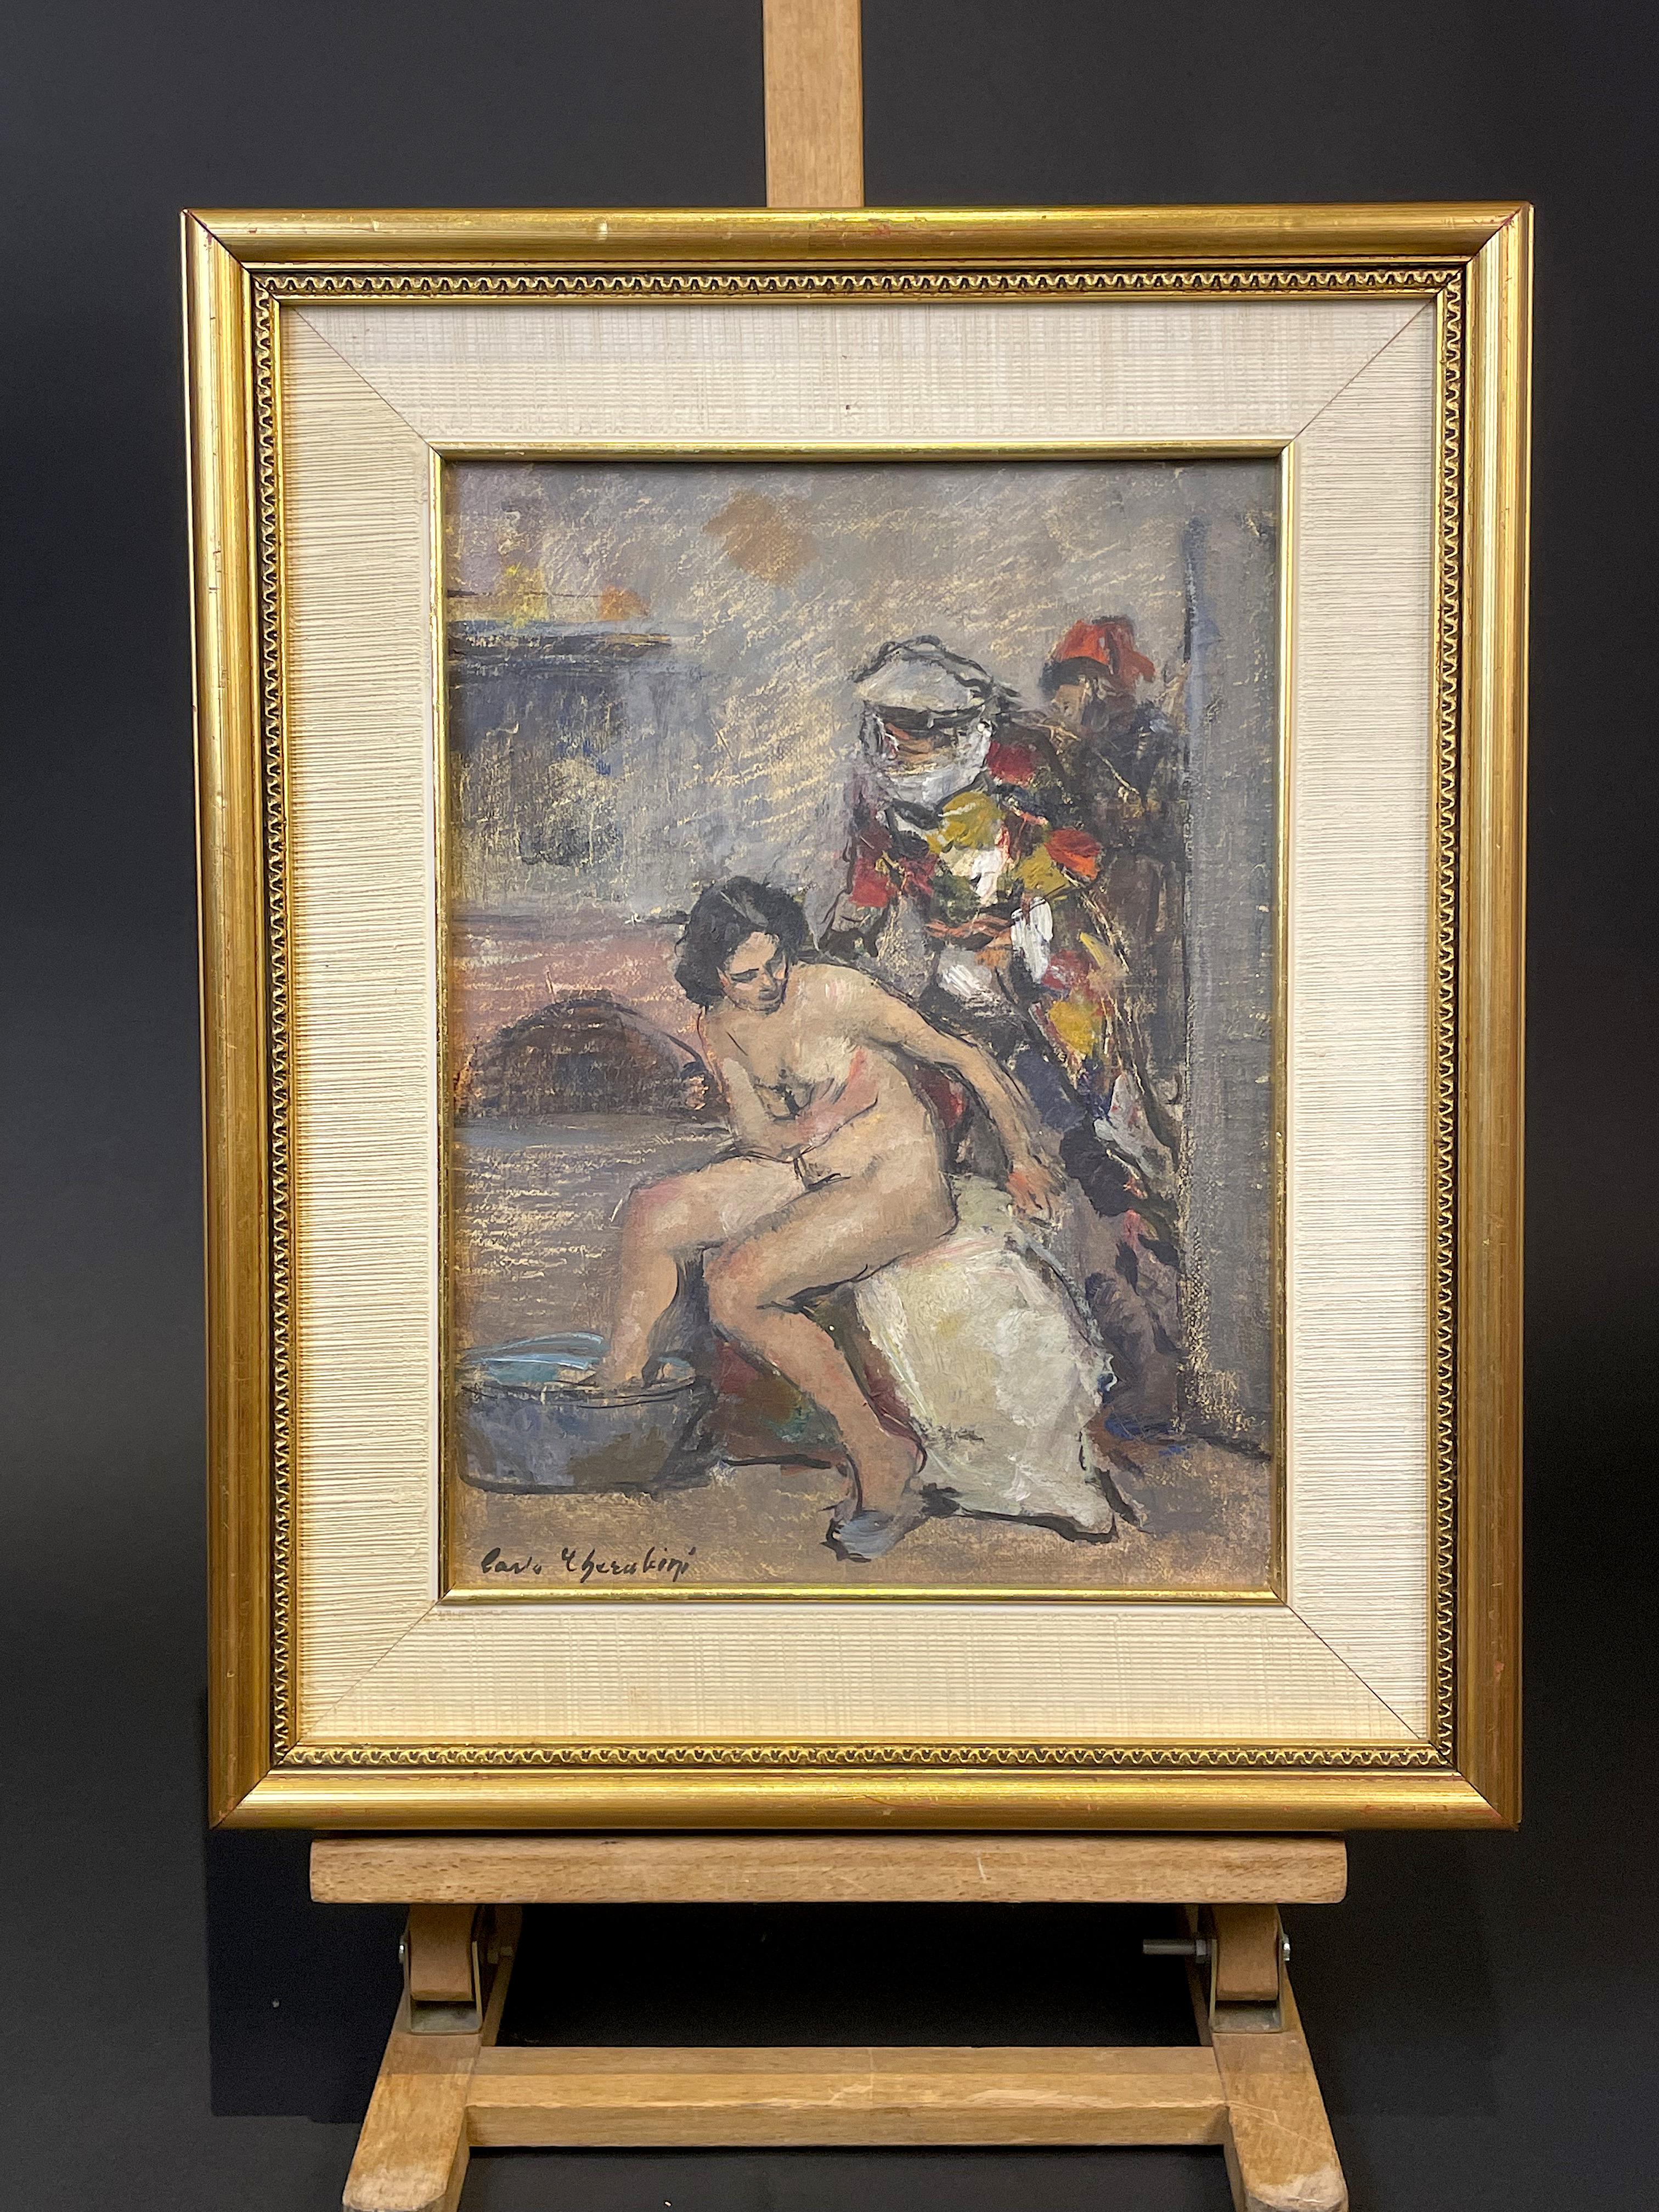 Peinture à l'huile sur toile du peintre vénitien Carlo CHERUBINI (Anona 1897-1978 Venise) réalisée vers les années 1950.
L'œuvre en question présente un nu féminin assis au premier plan ; derrière elle se trouvent des personnages masqués (que l'on